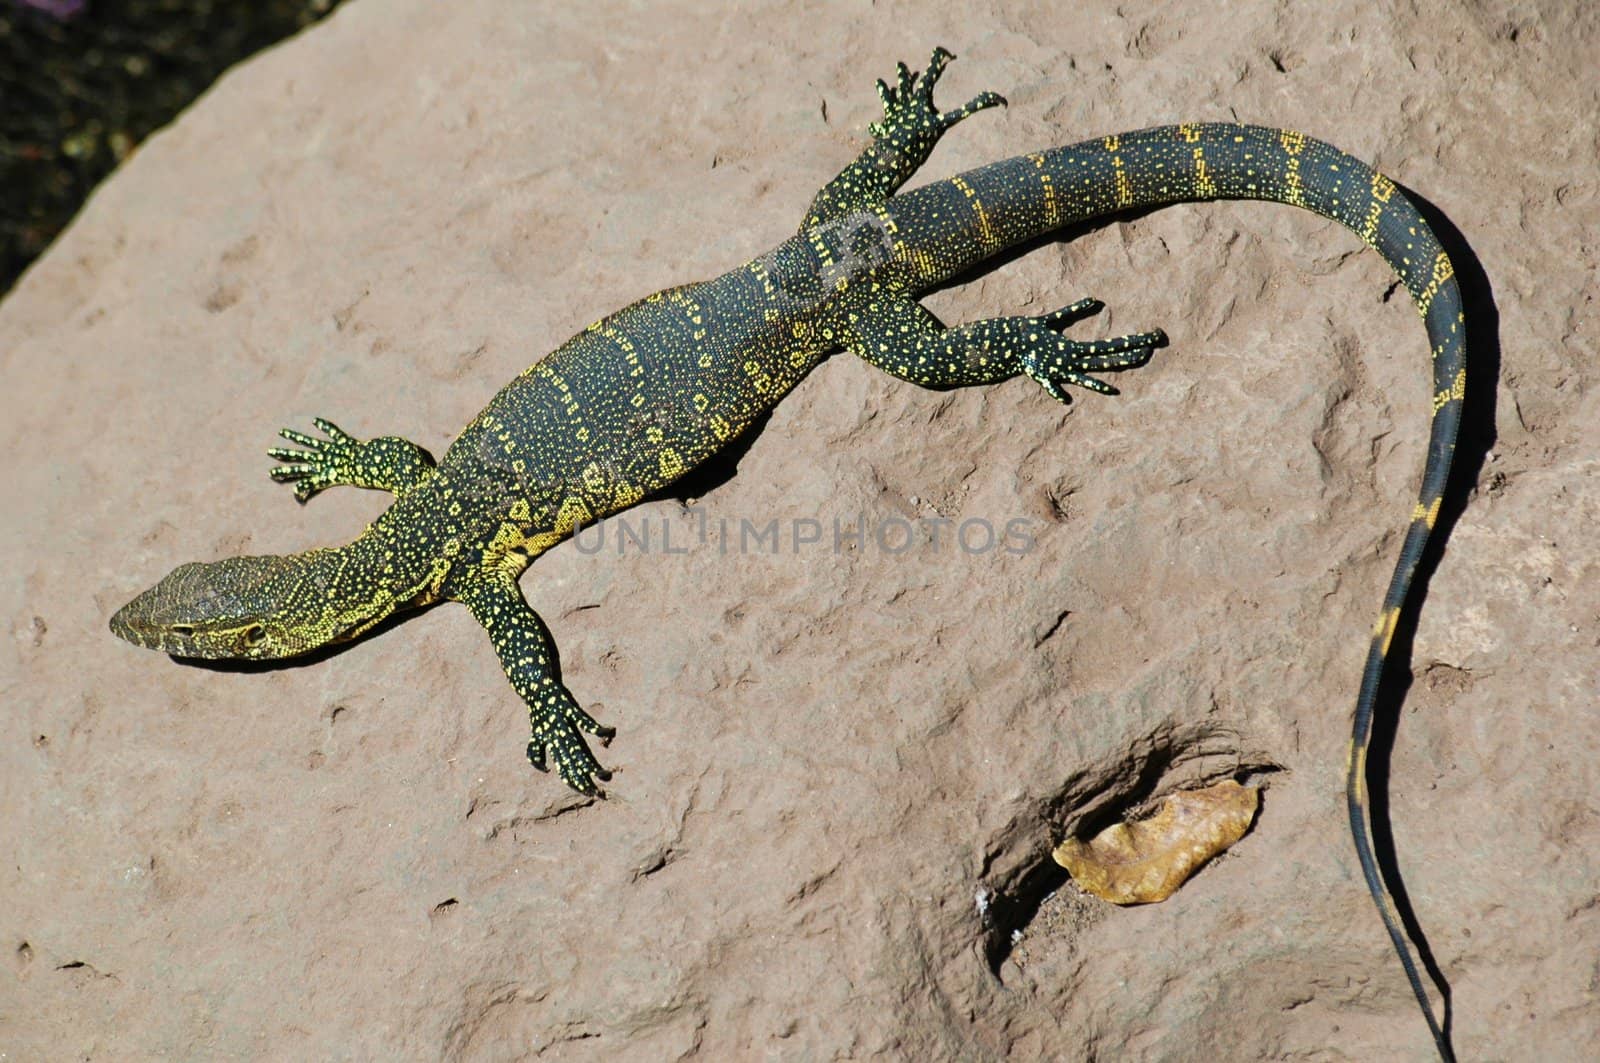 Lizard is taking sun on a soft rock, Africa